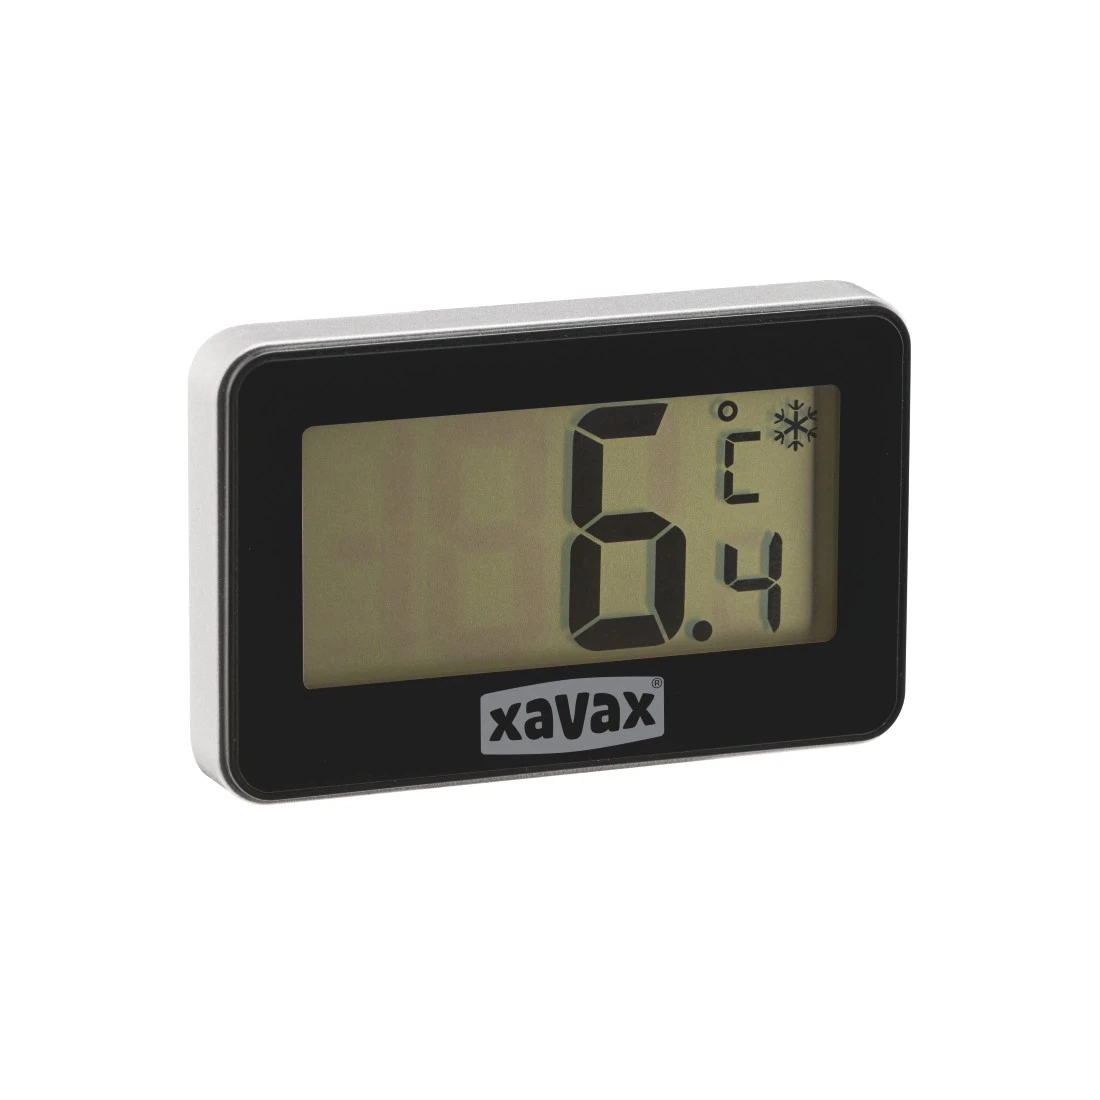 abx3 Druckfähige Abbildung 3 - Xavax, Digitales Thermometer für Kühlschrank, Gefrierschrank u. Kühltruhe, Schwarz